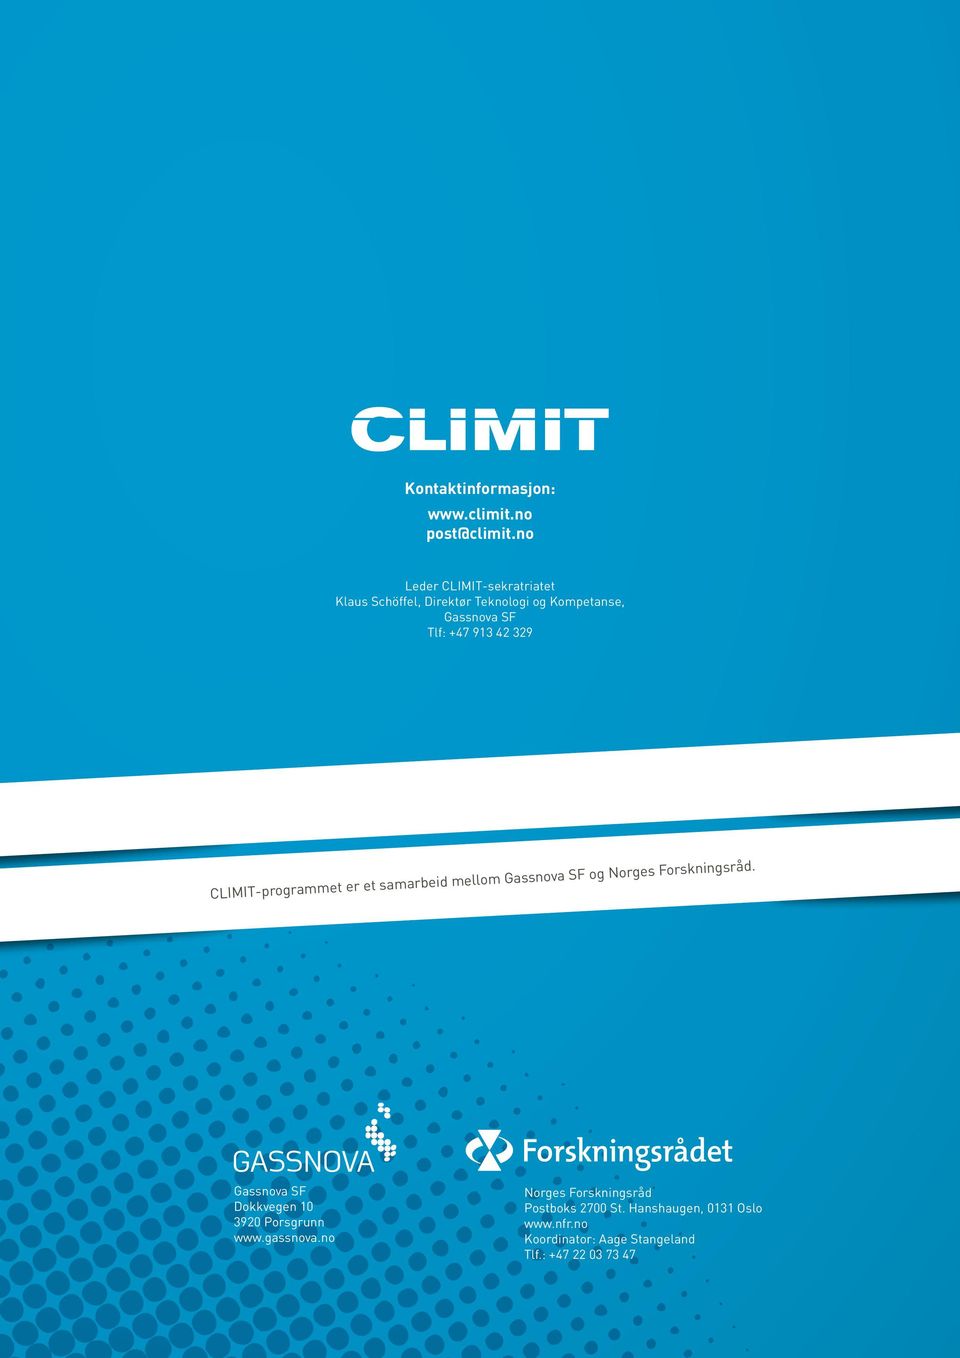 42 329 CLIMIT-programmet er et samarbeid mellom Gassnova SF og Norges Forskningsråd.